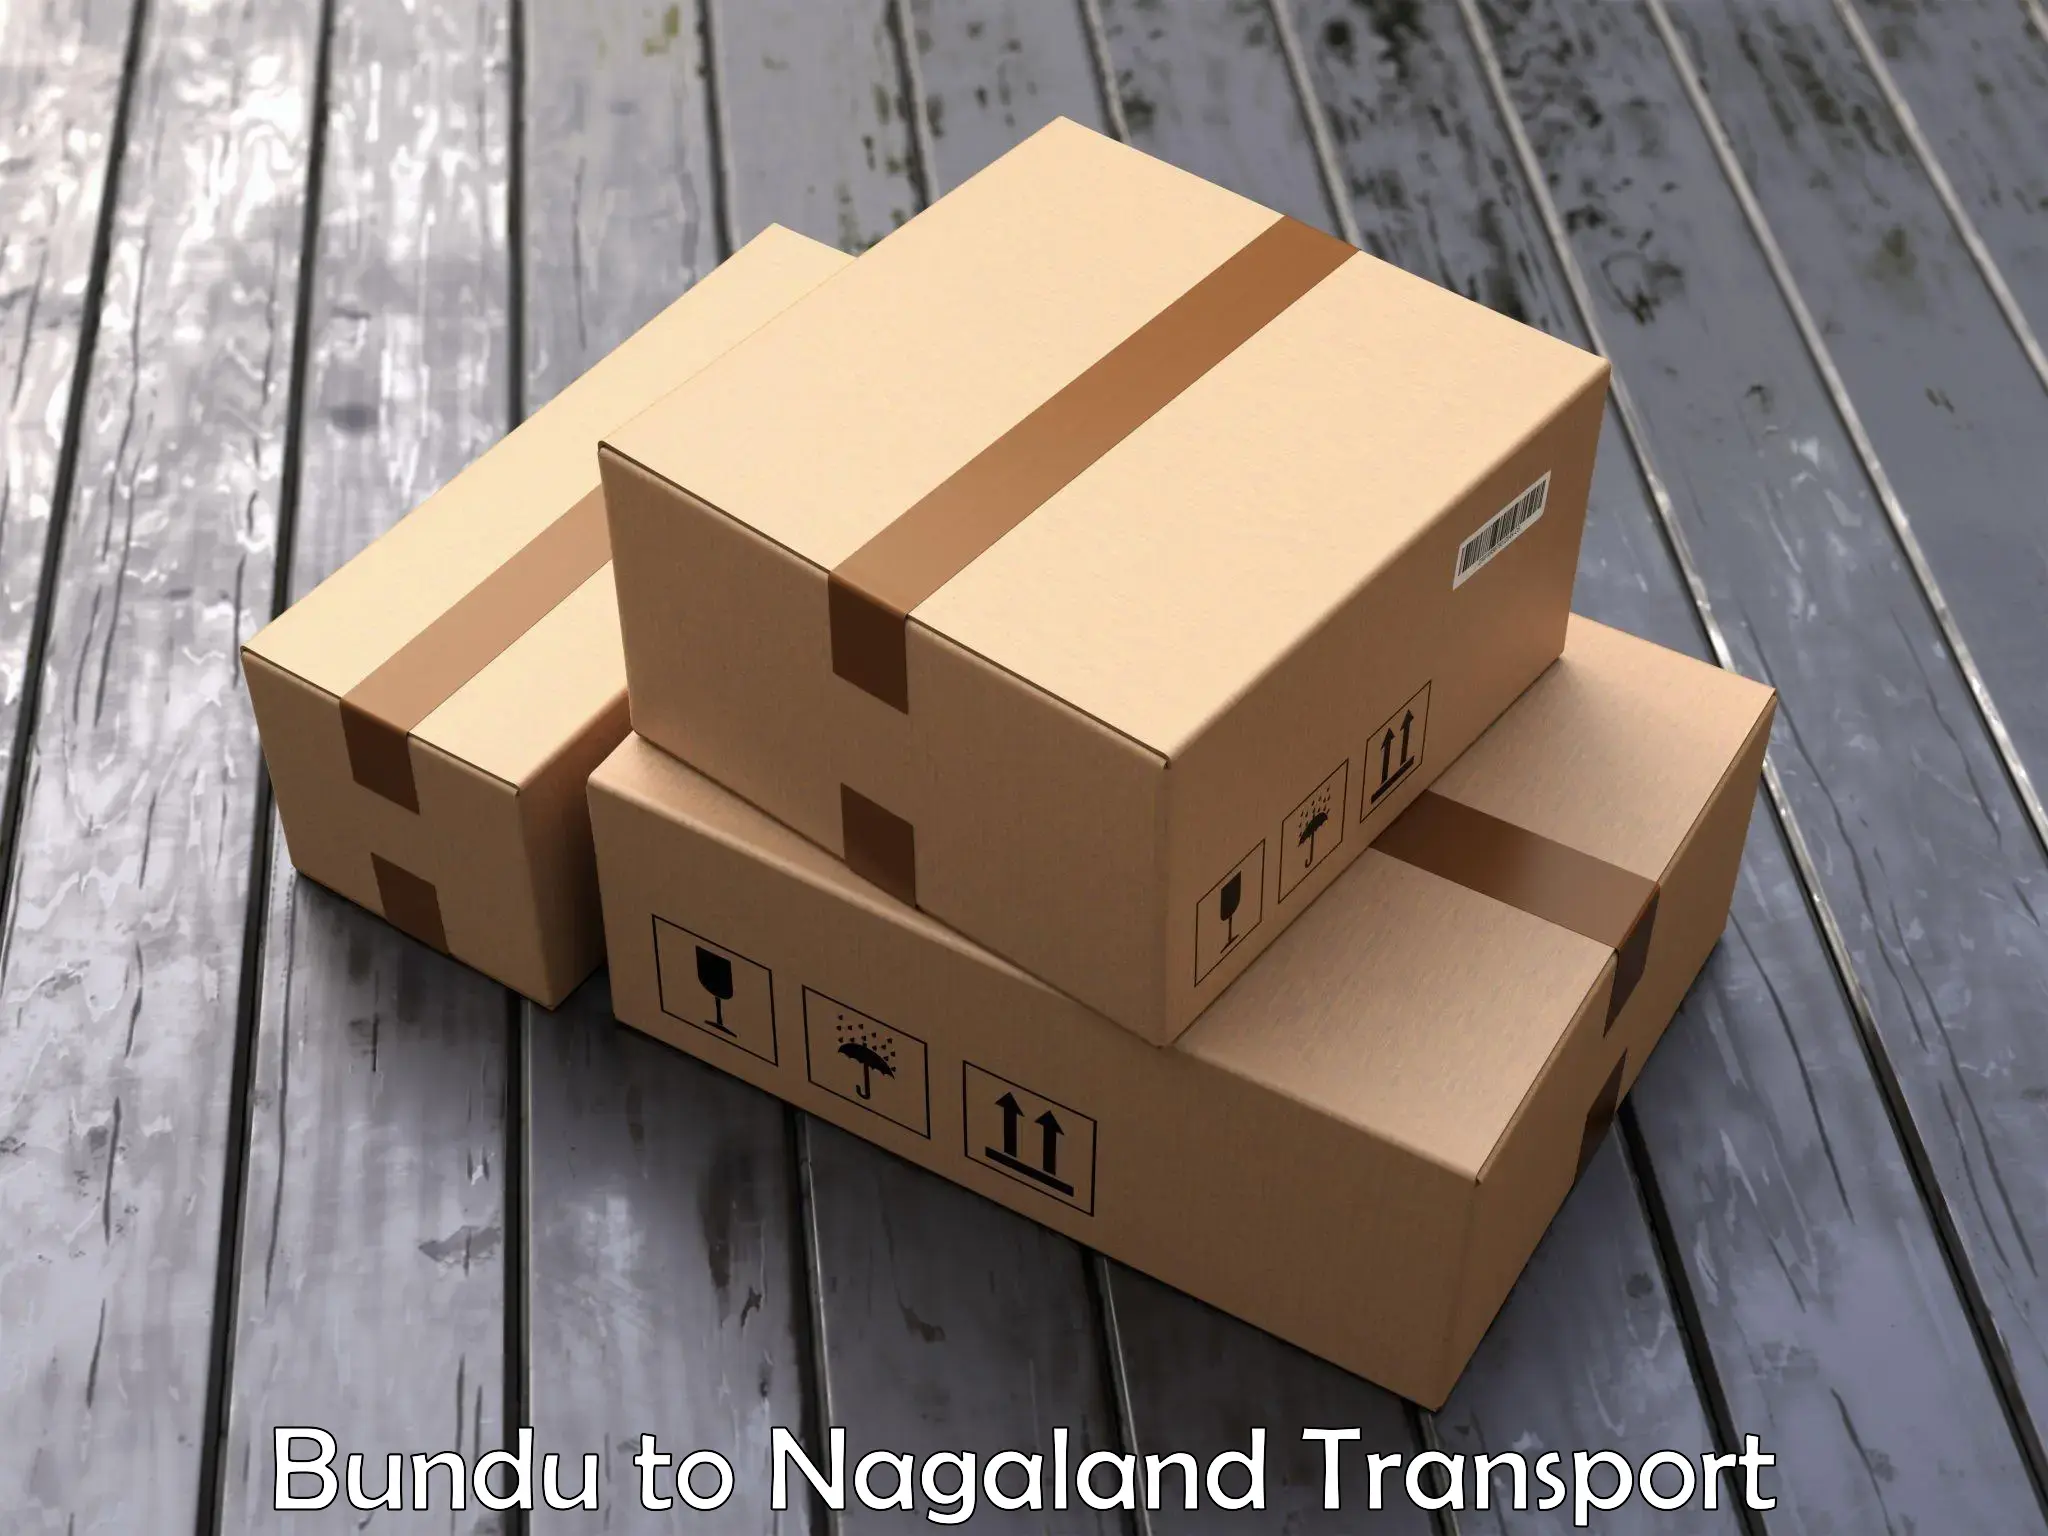 Daily transport service Bundu to Longleng